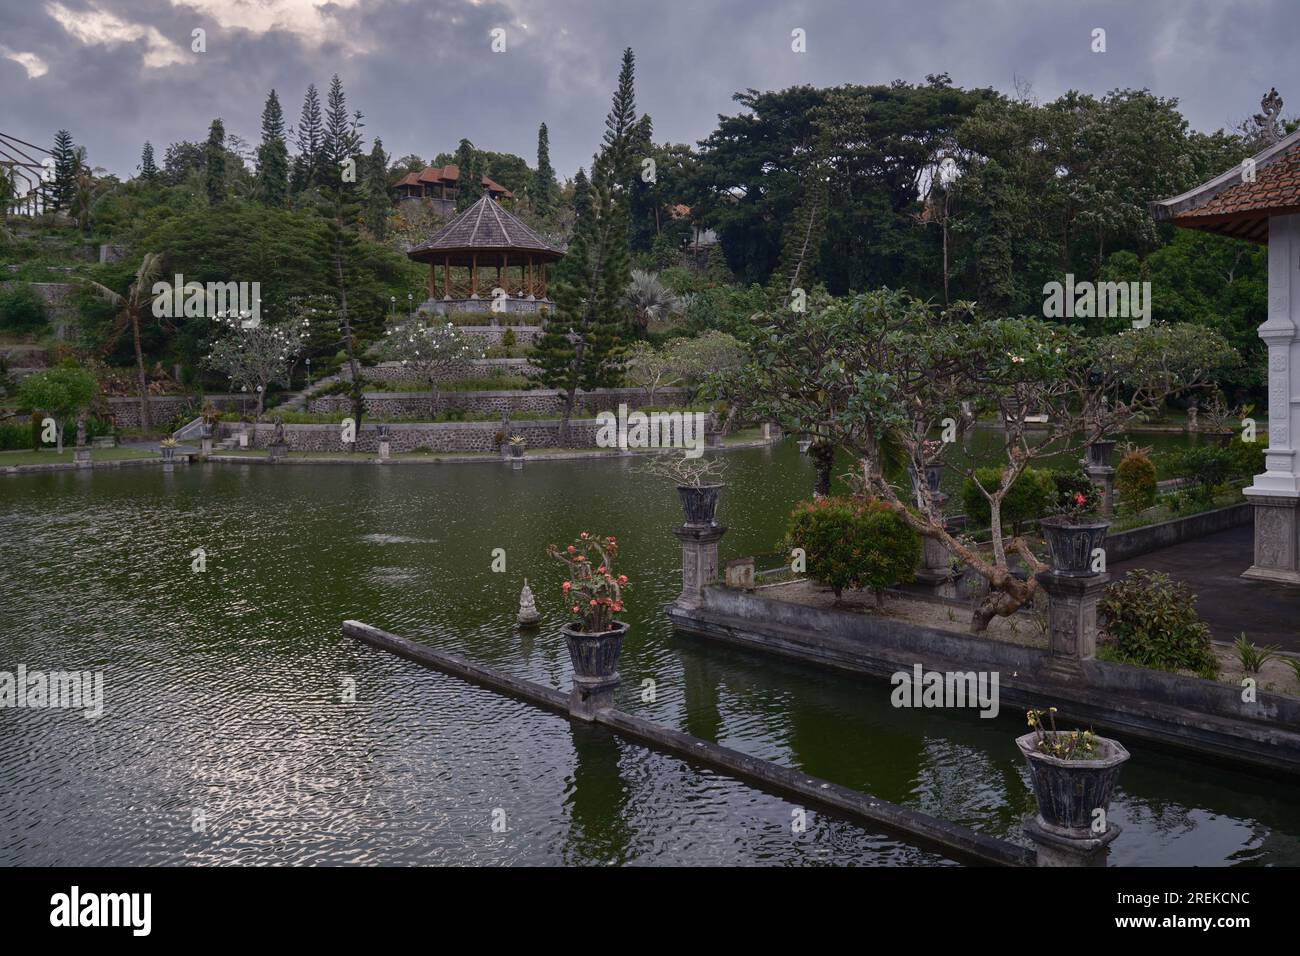 Ujung Water Palace ist ein ehemaliger Palast in Karangasem Regency, Bali, Indonesien. Auch bekannt als Ujung Park, Waterpaleis oder Sukasada Park. Stockfoto